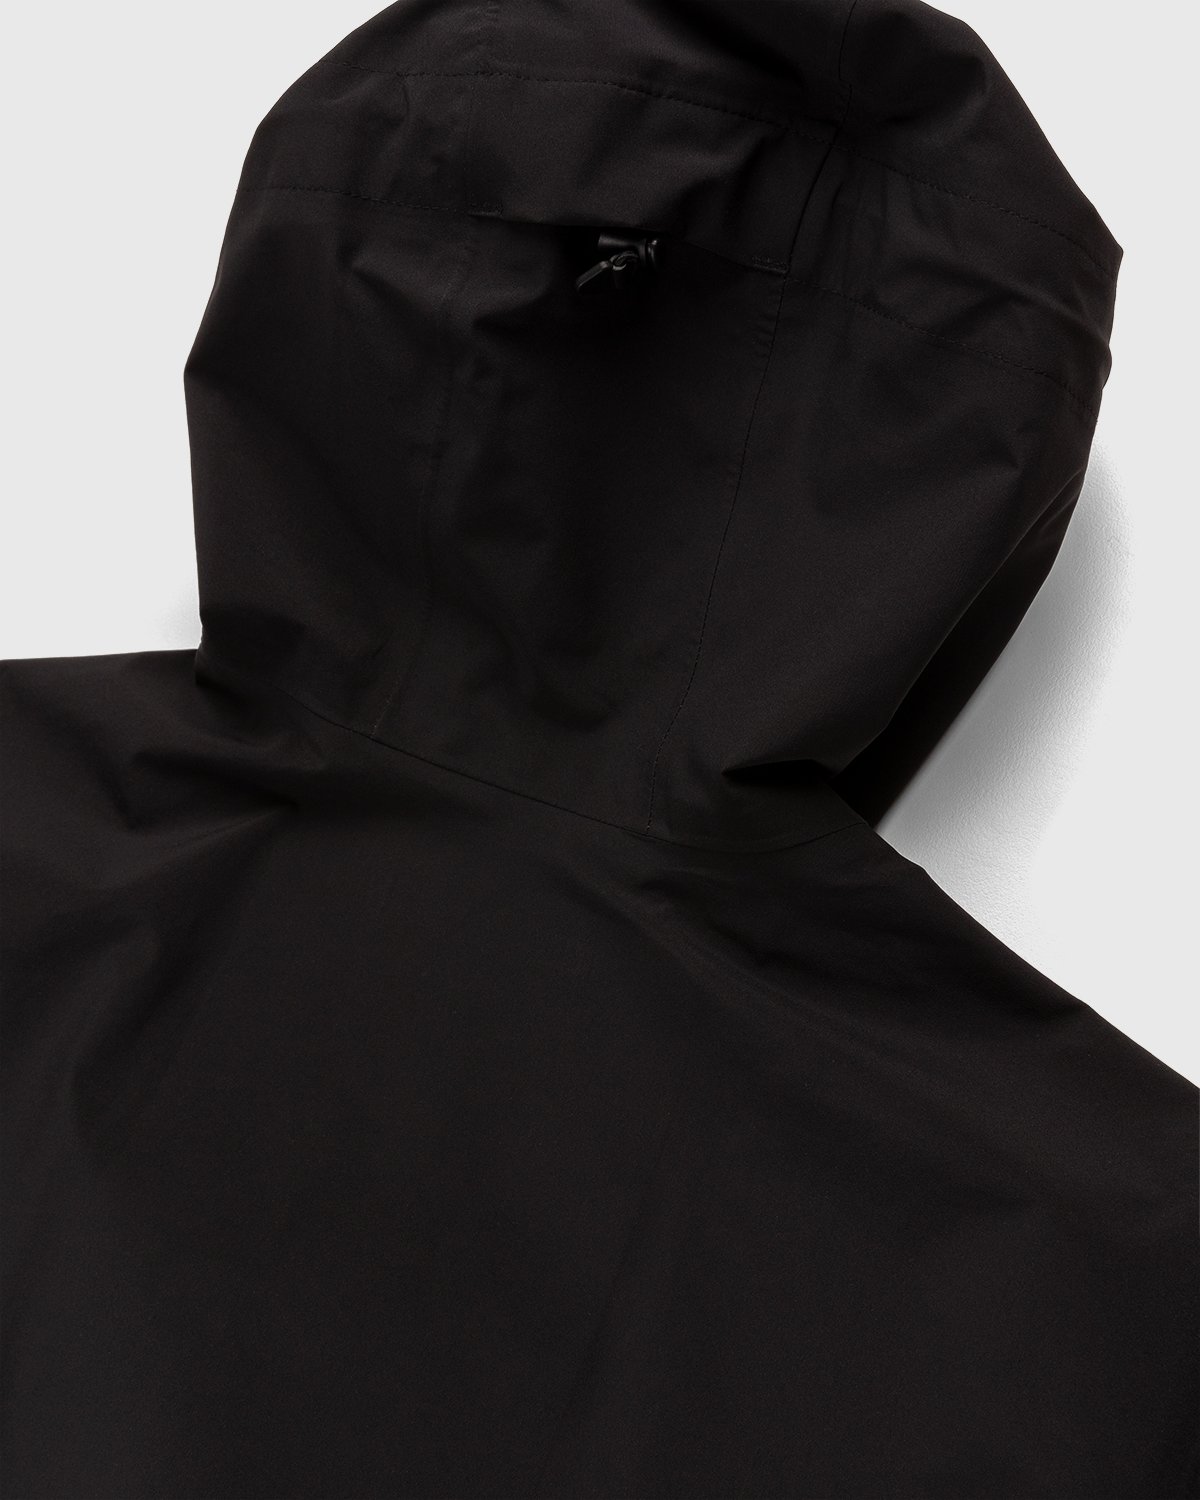 Jack Wolfskin x Highsnobiety - HS Sports Rain Jacket Black - Clothing - Black - Image 3